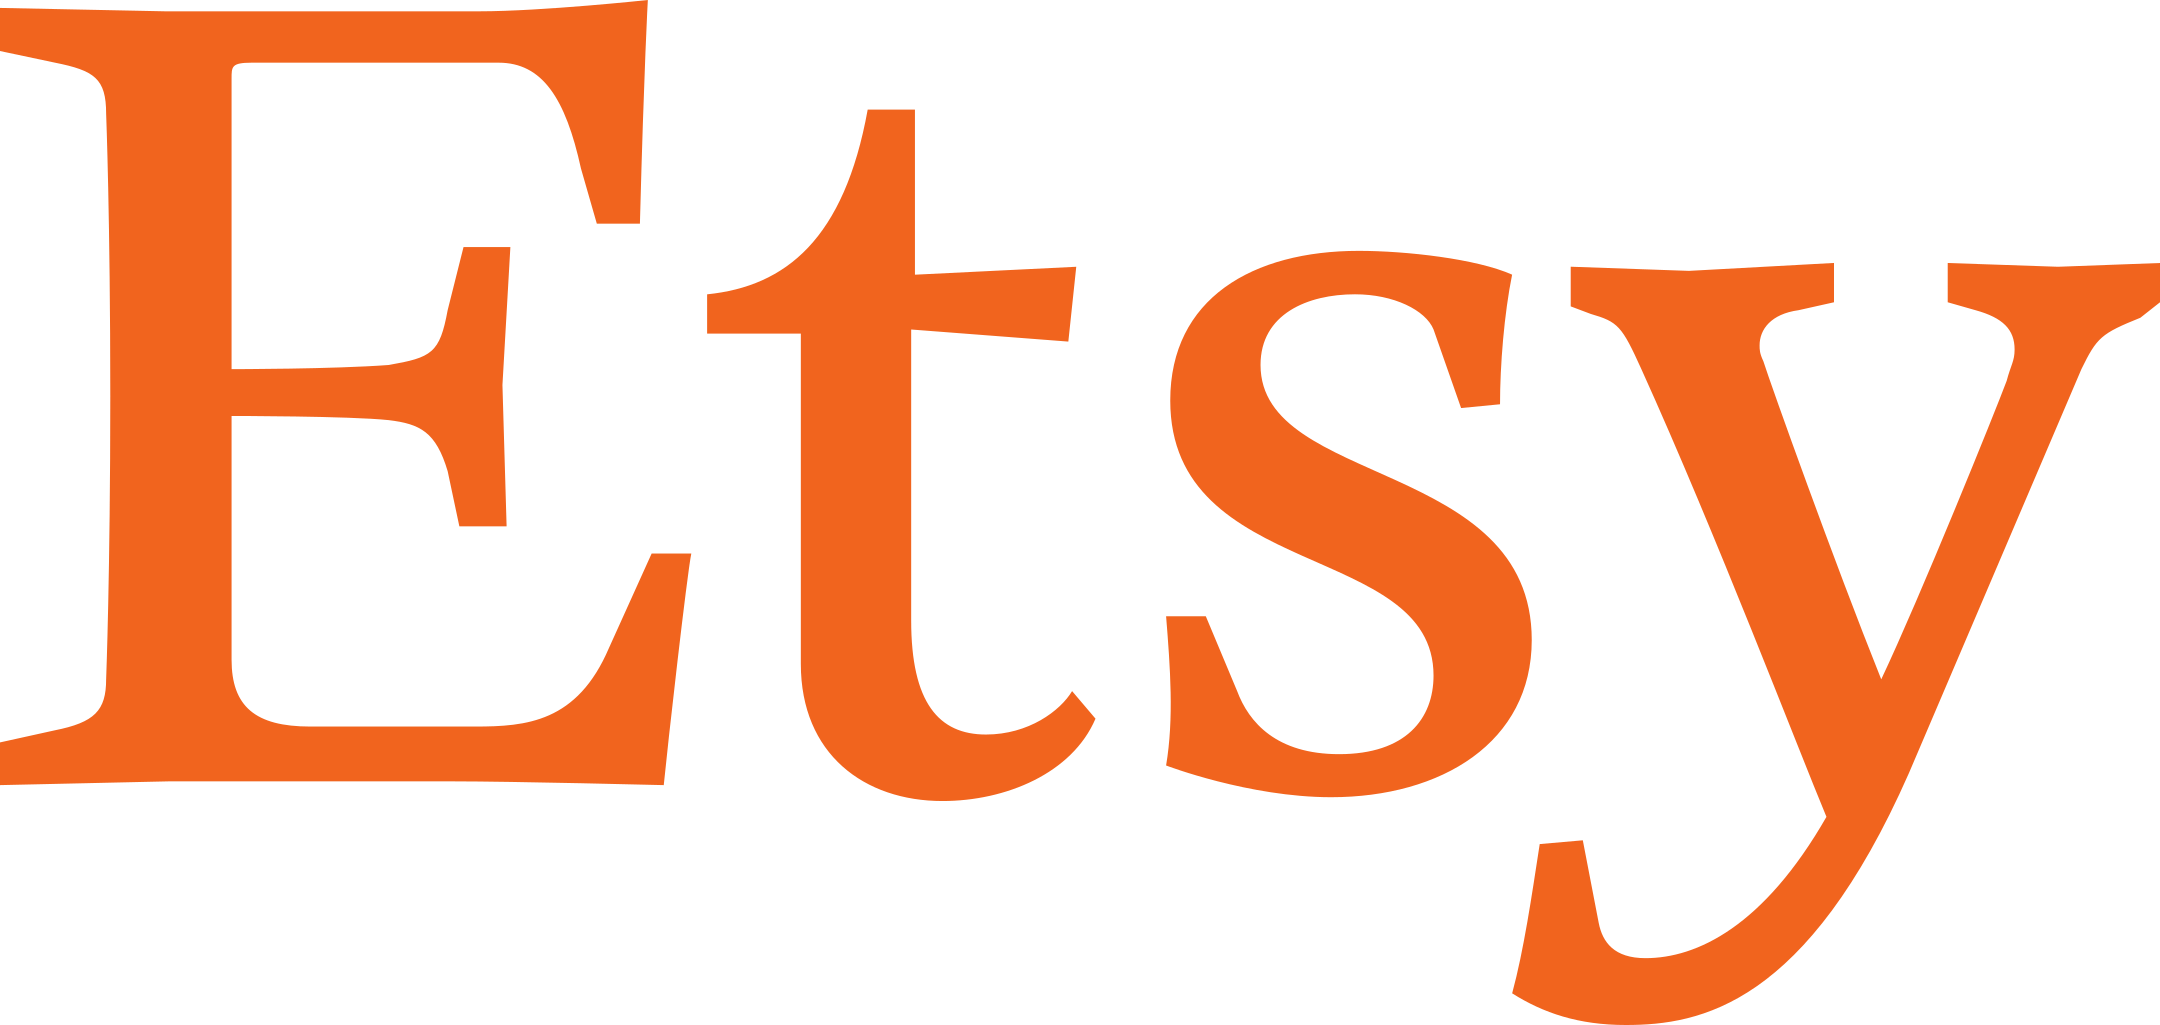 etsy logo 1 1 - Etsy Logo